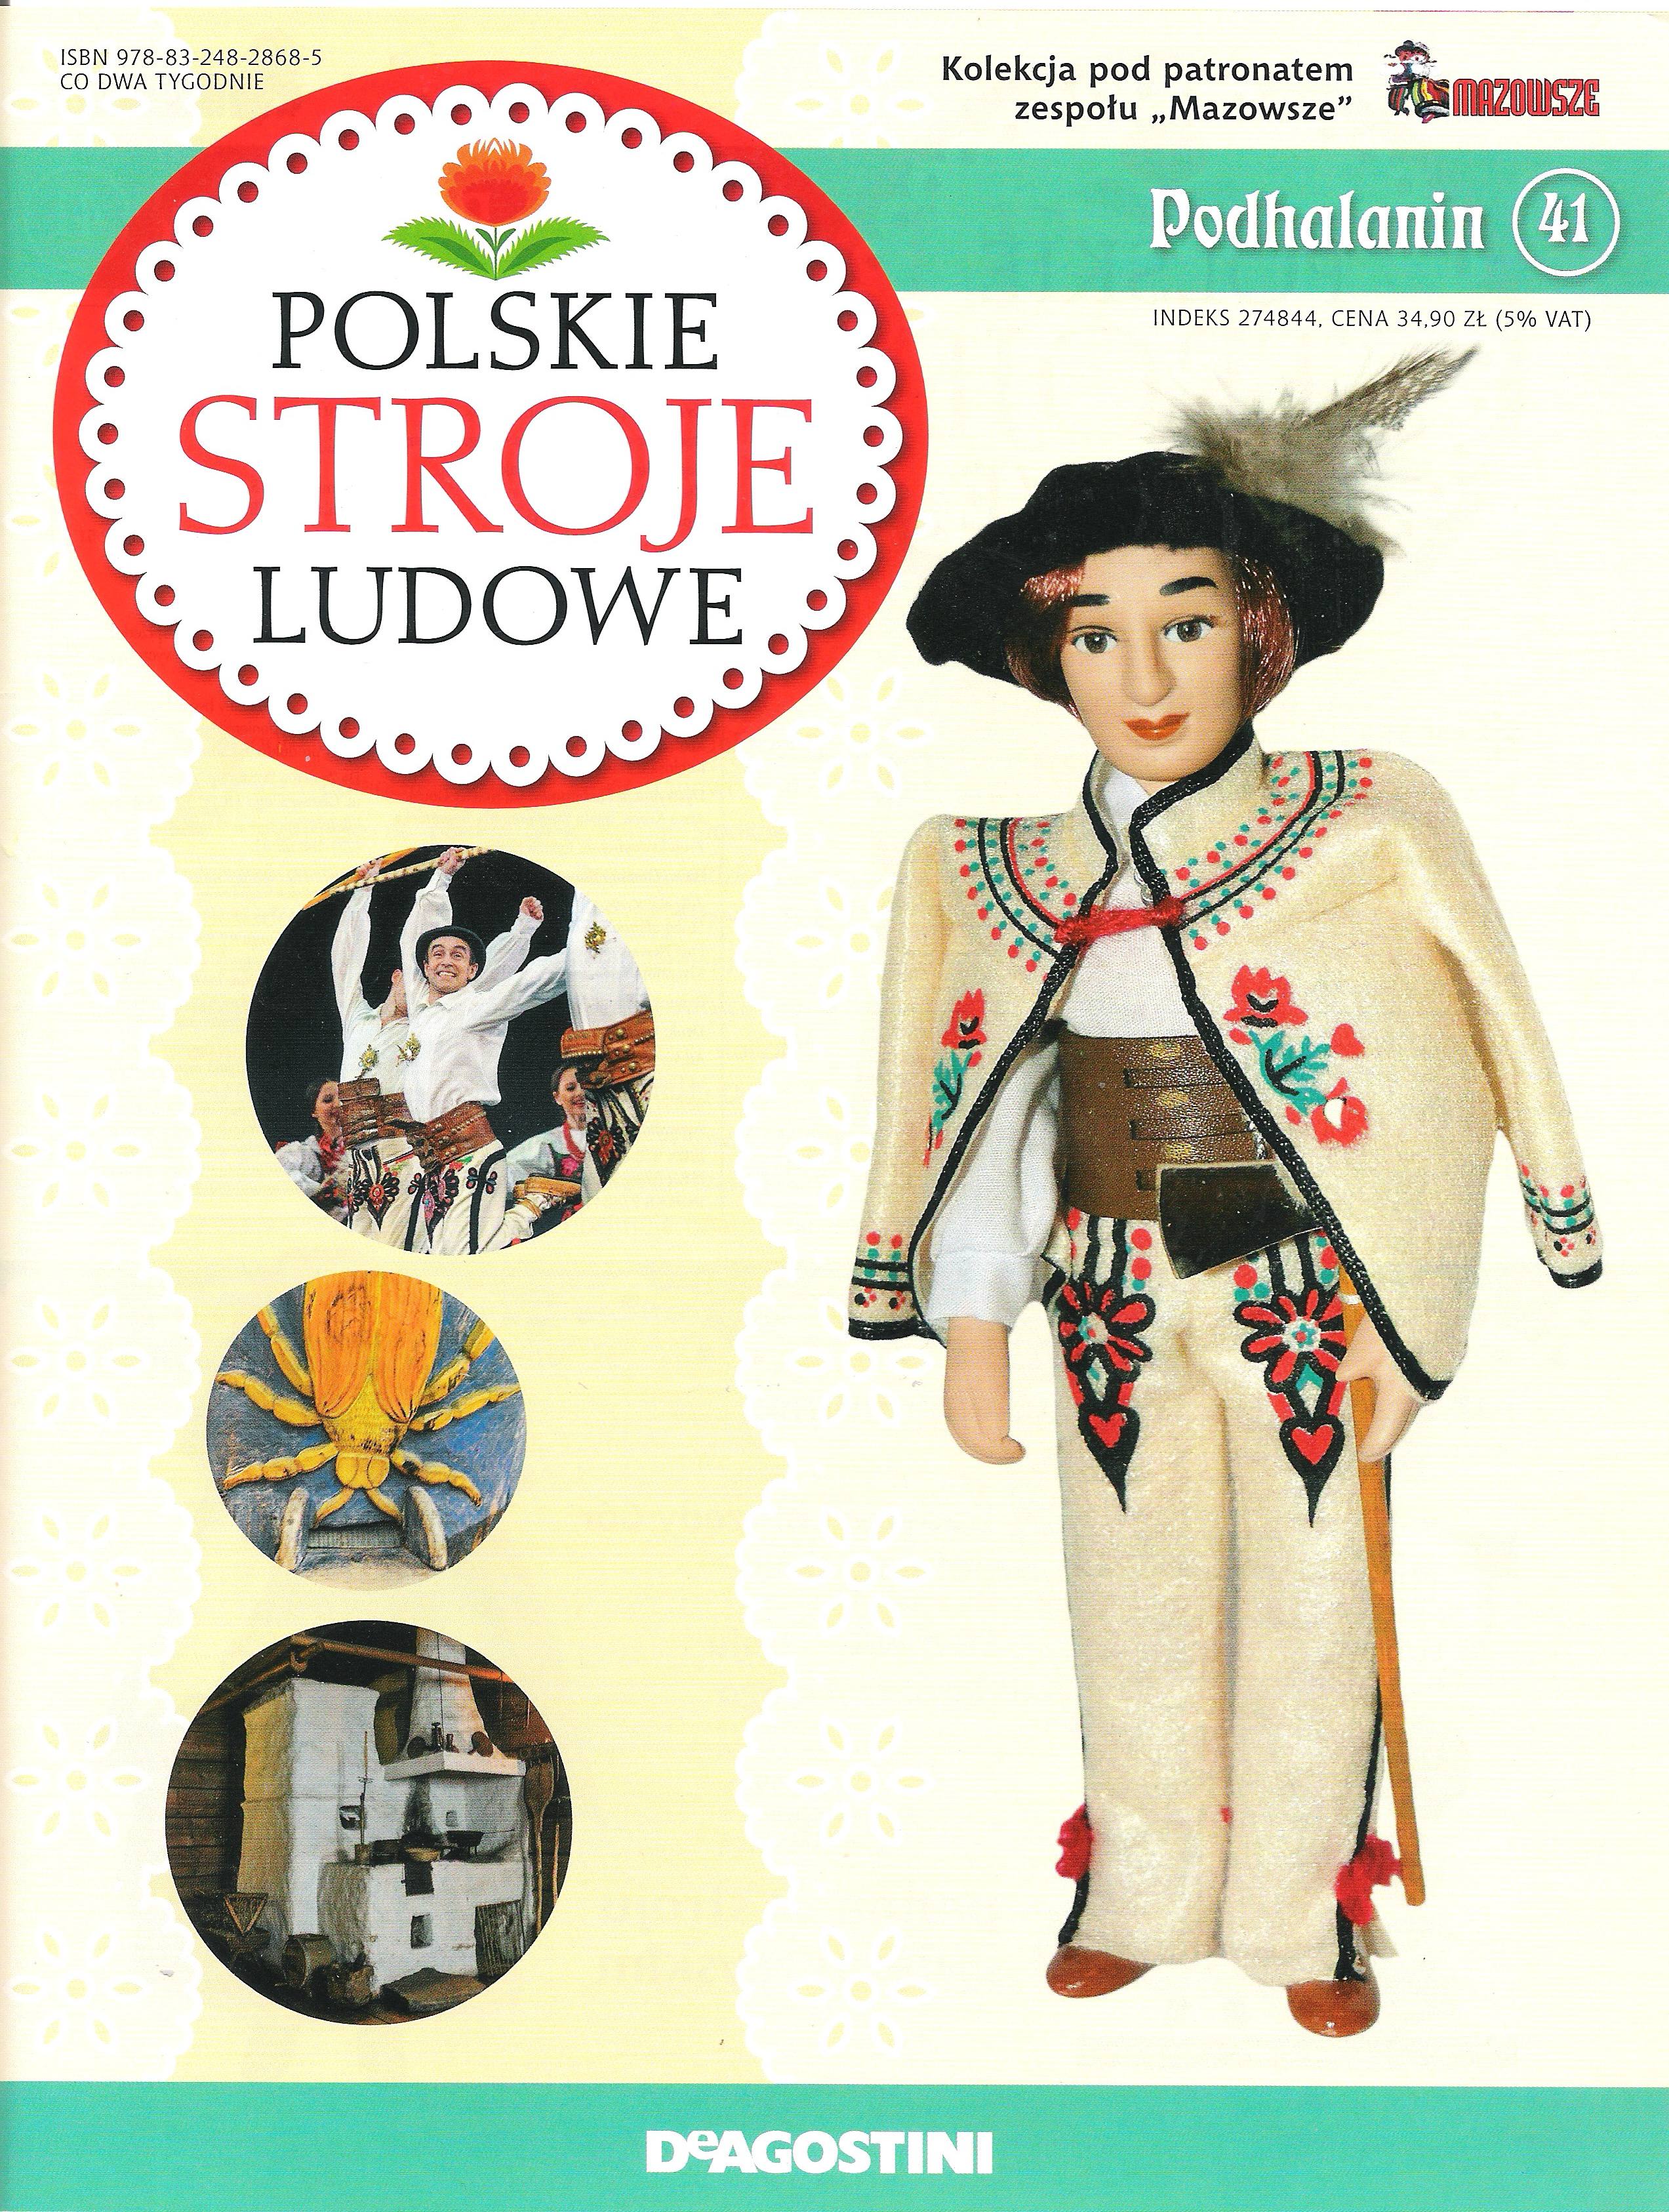 Polskie Stroje Ludowe №041 - Podhalanin - 1